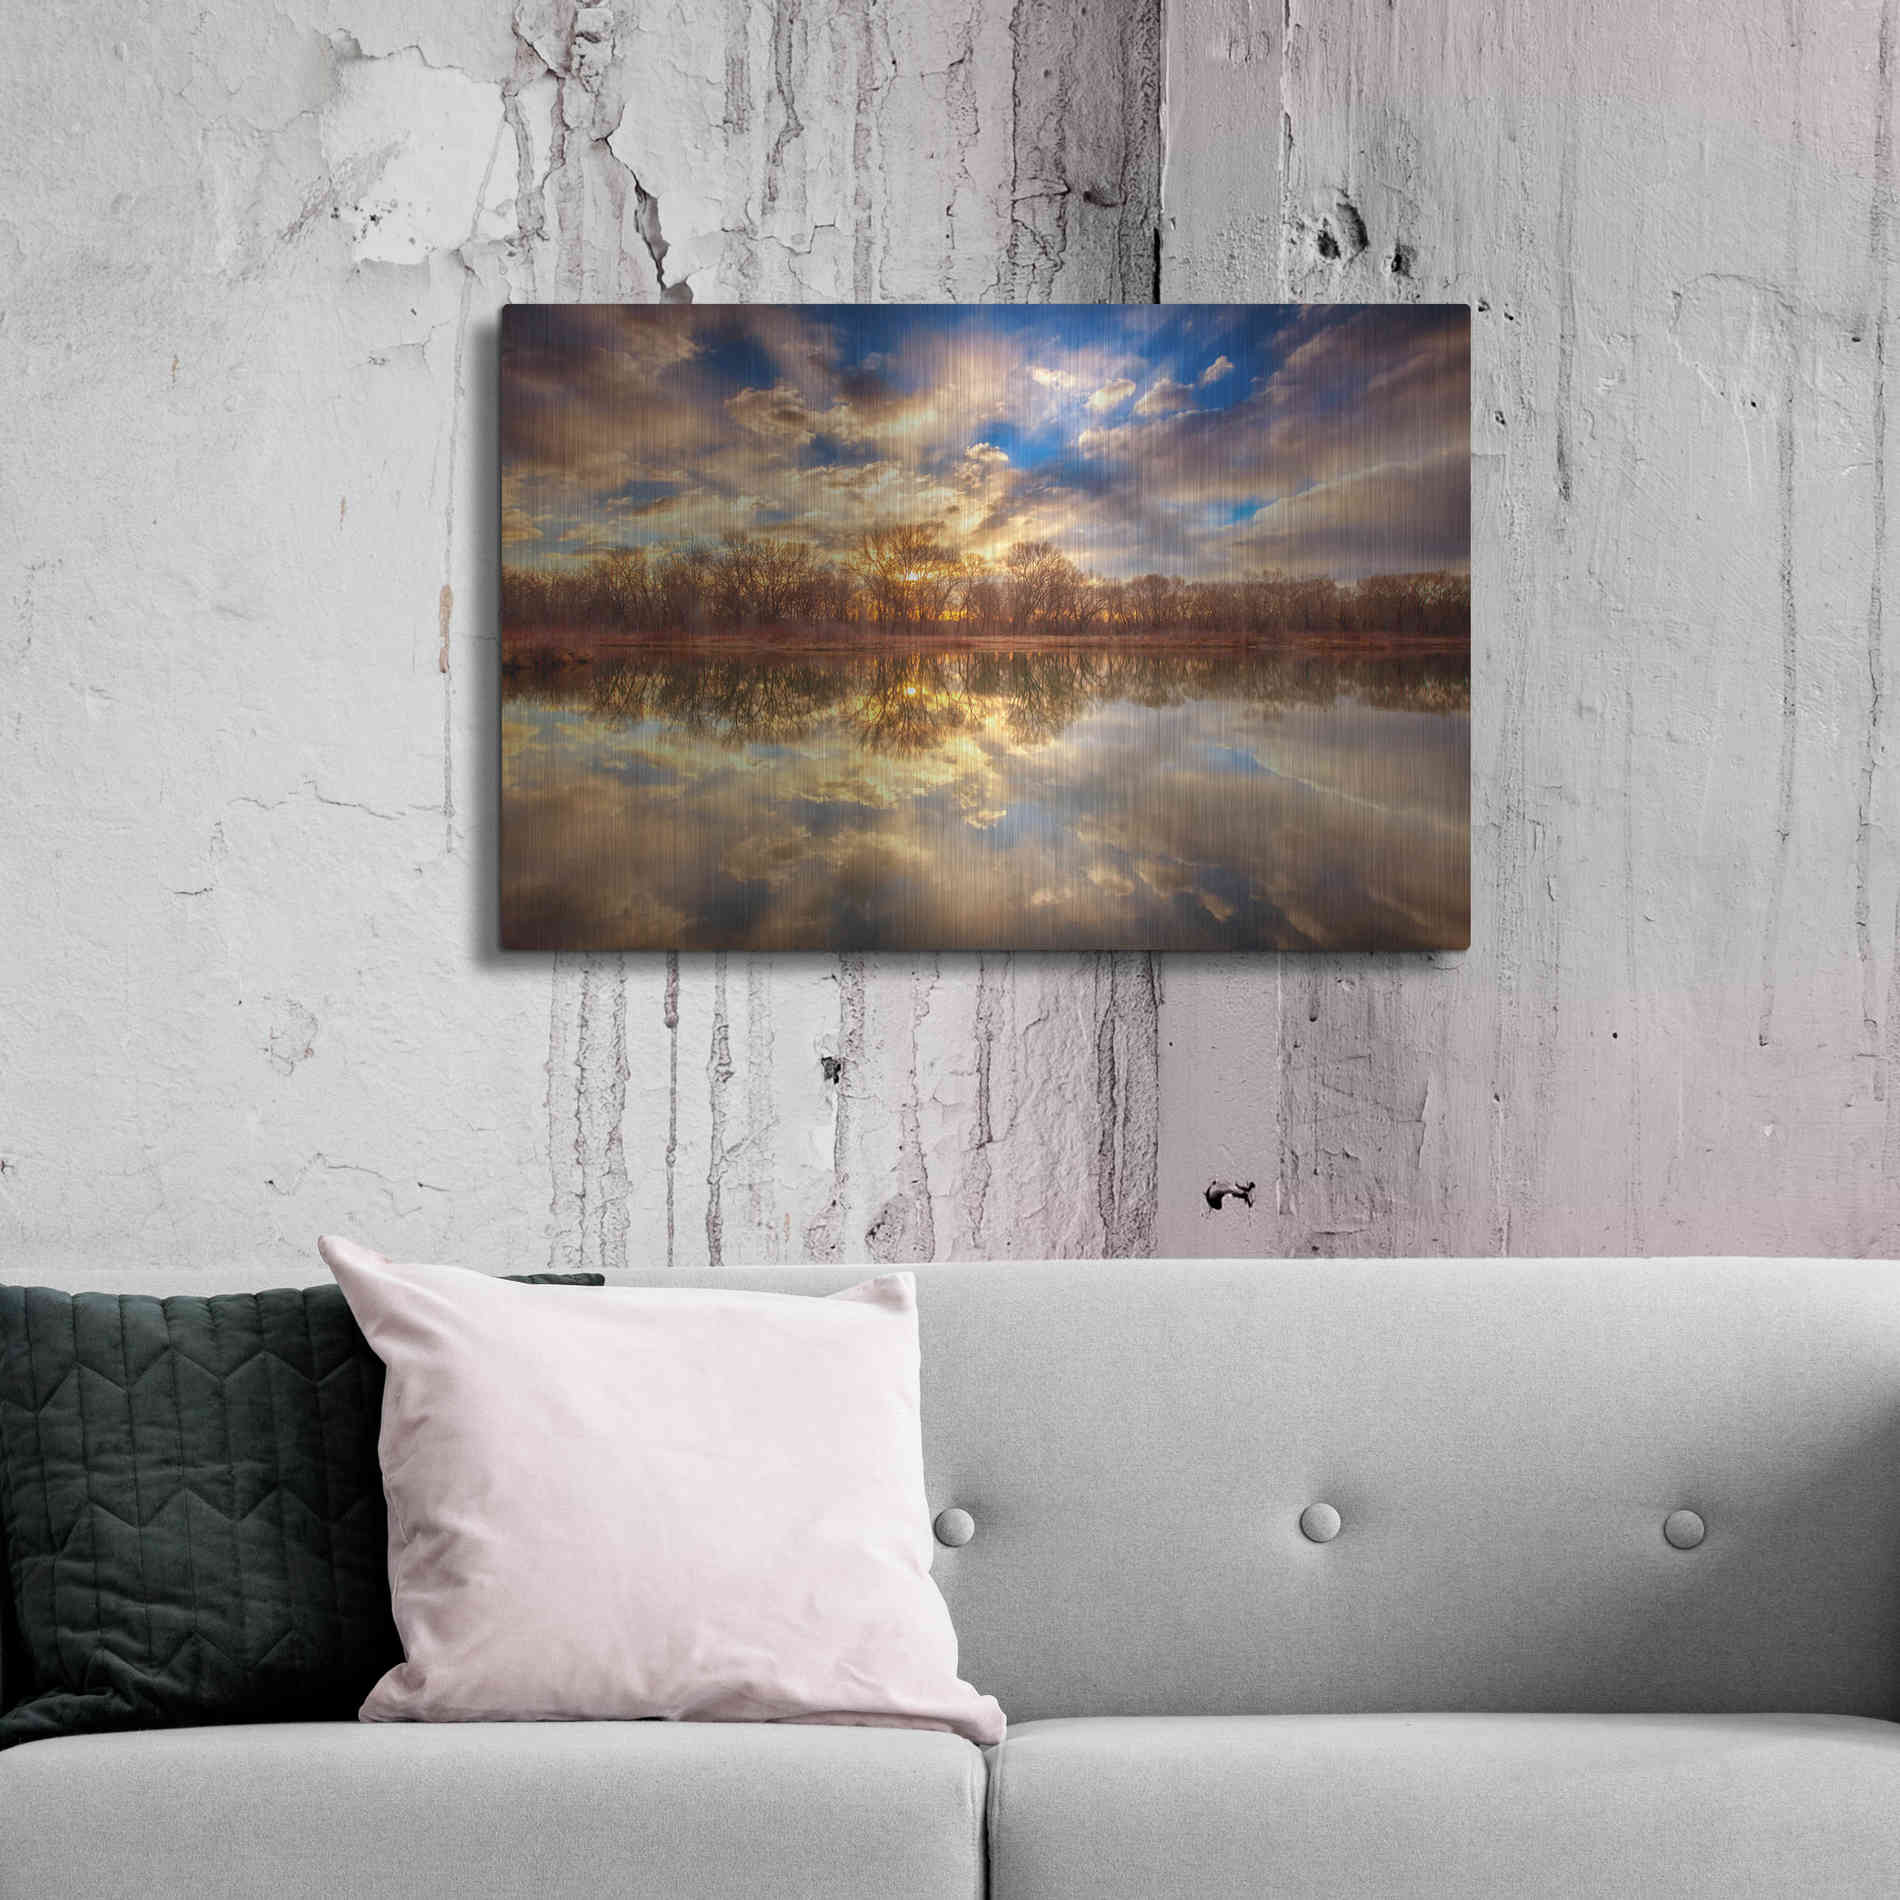 Luxe Metal Art 'Chatfield Sunrise' by Darren White, Metal Wall Art,36x24